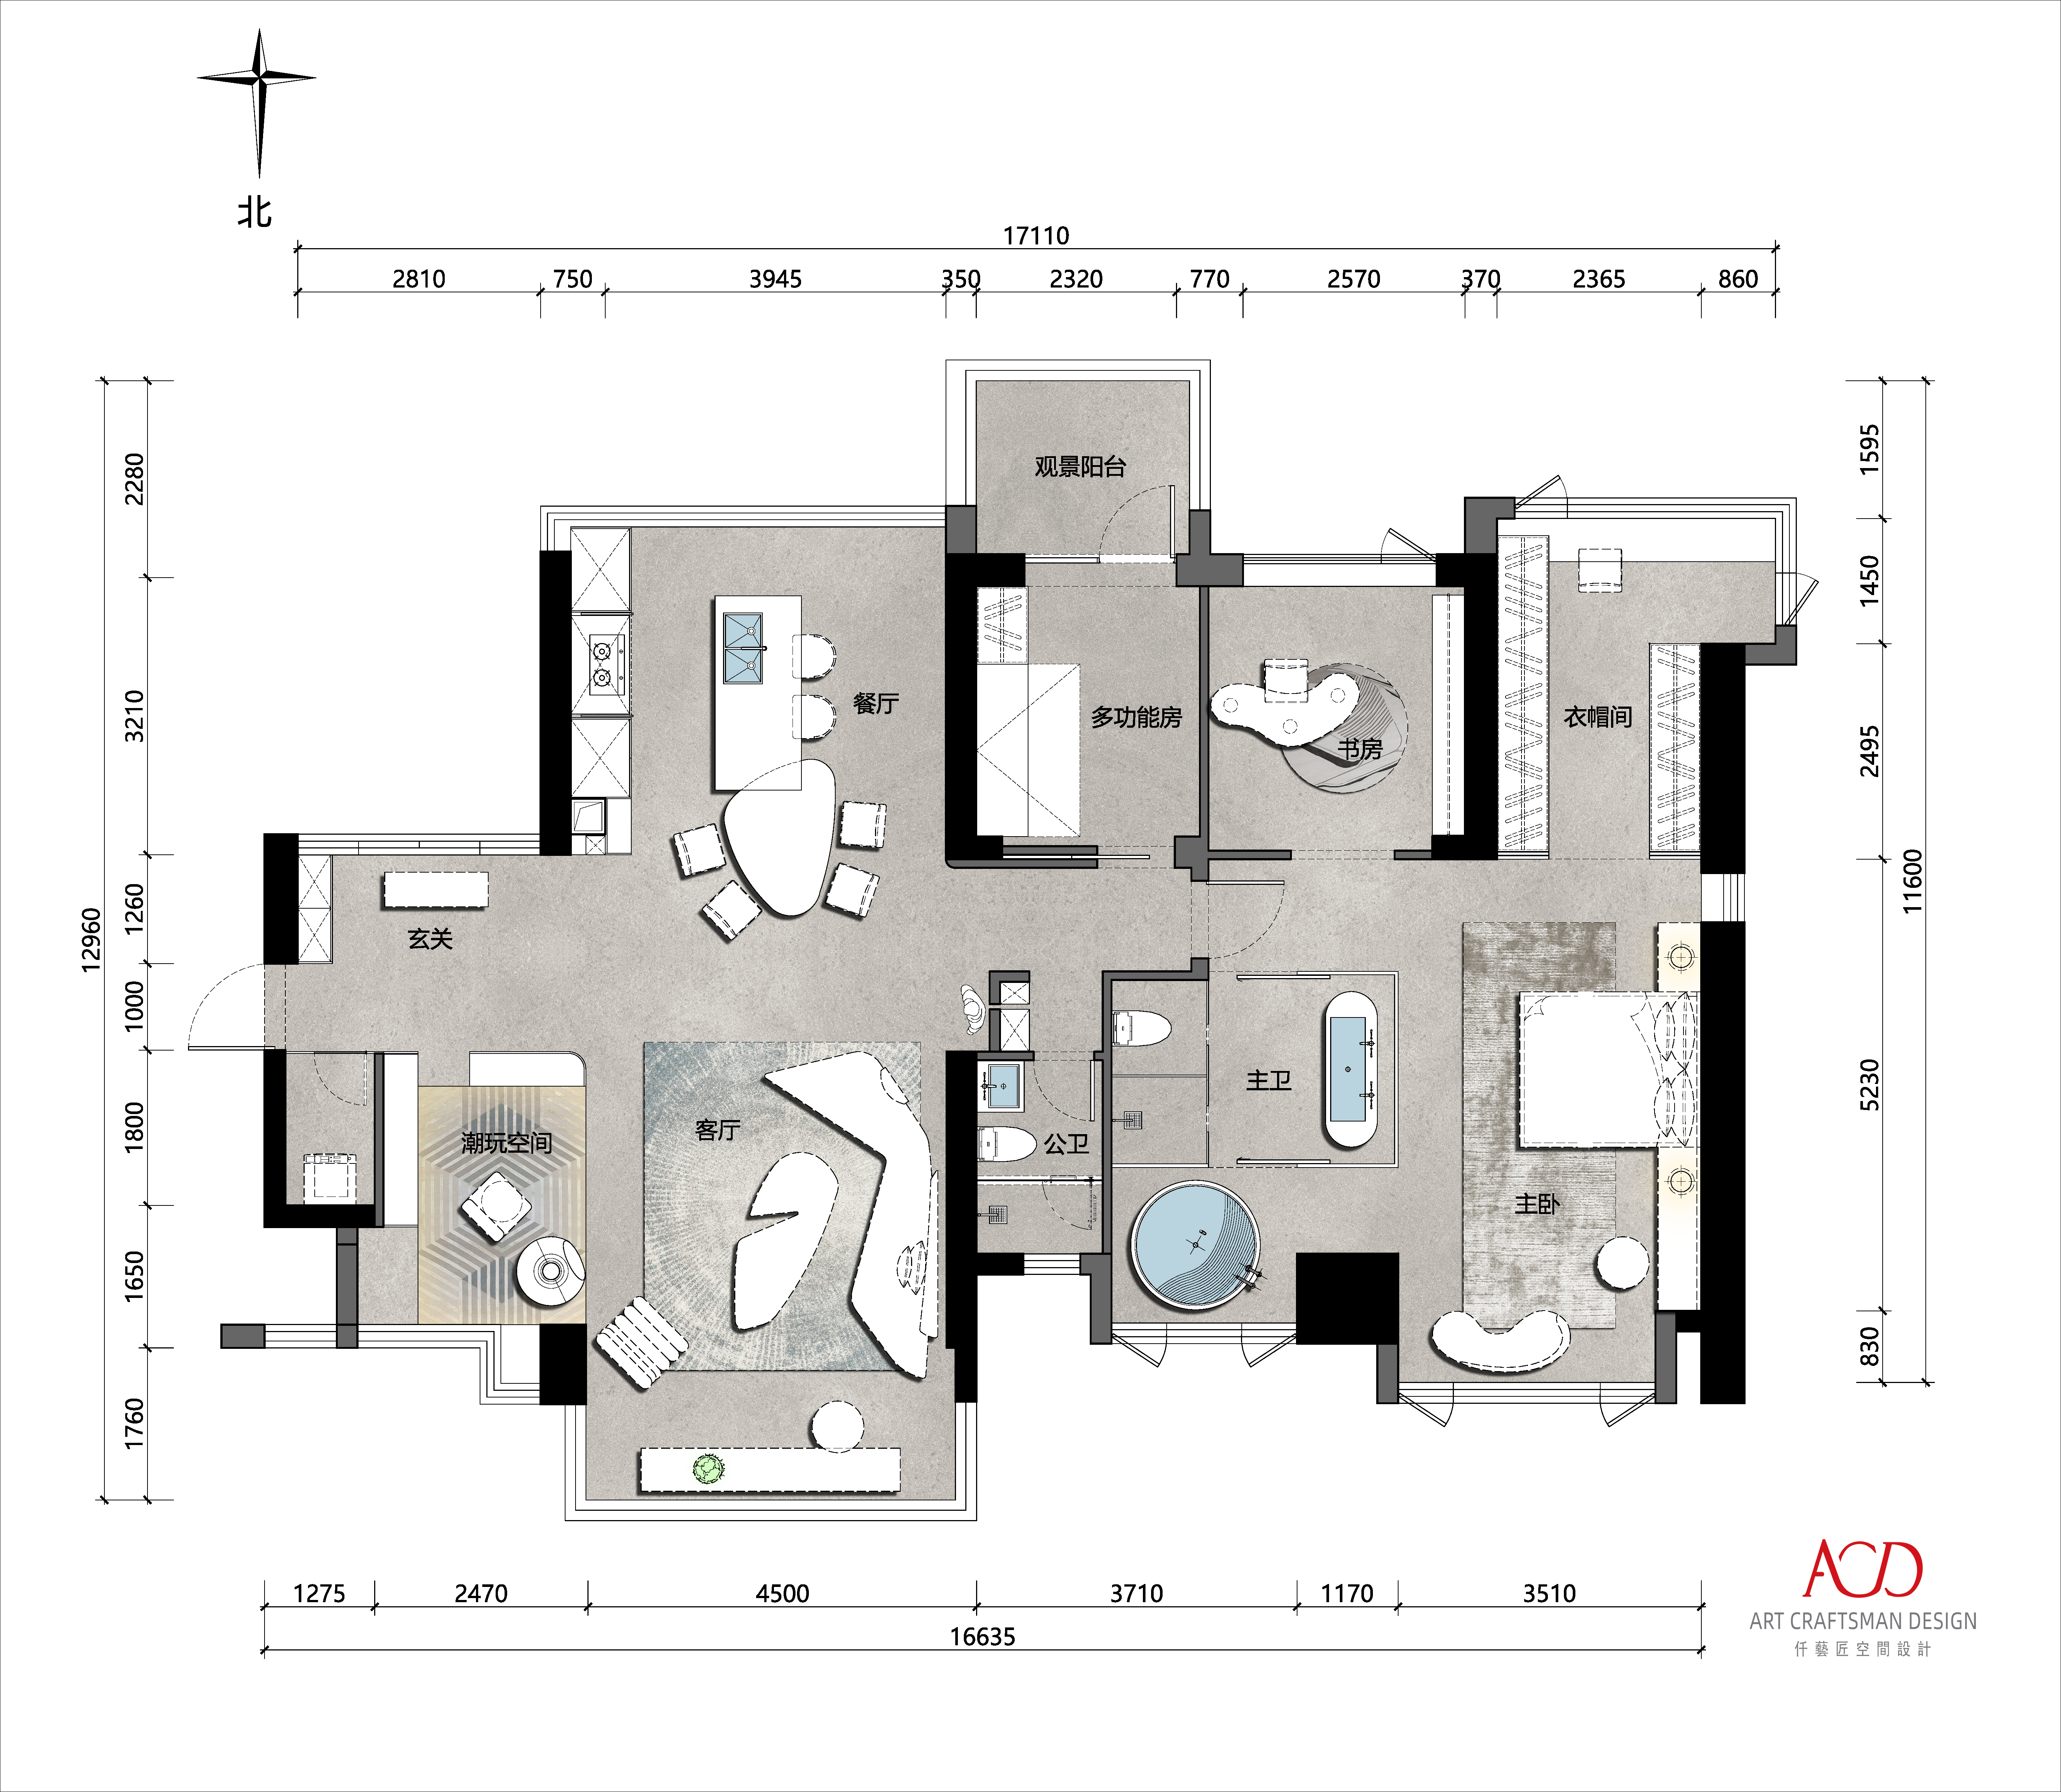 【首发】仟艺匠（ACD）高端私宅设计 | 深圳溪山美地•开启潮玩居住生活(图2)